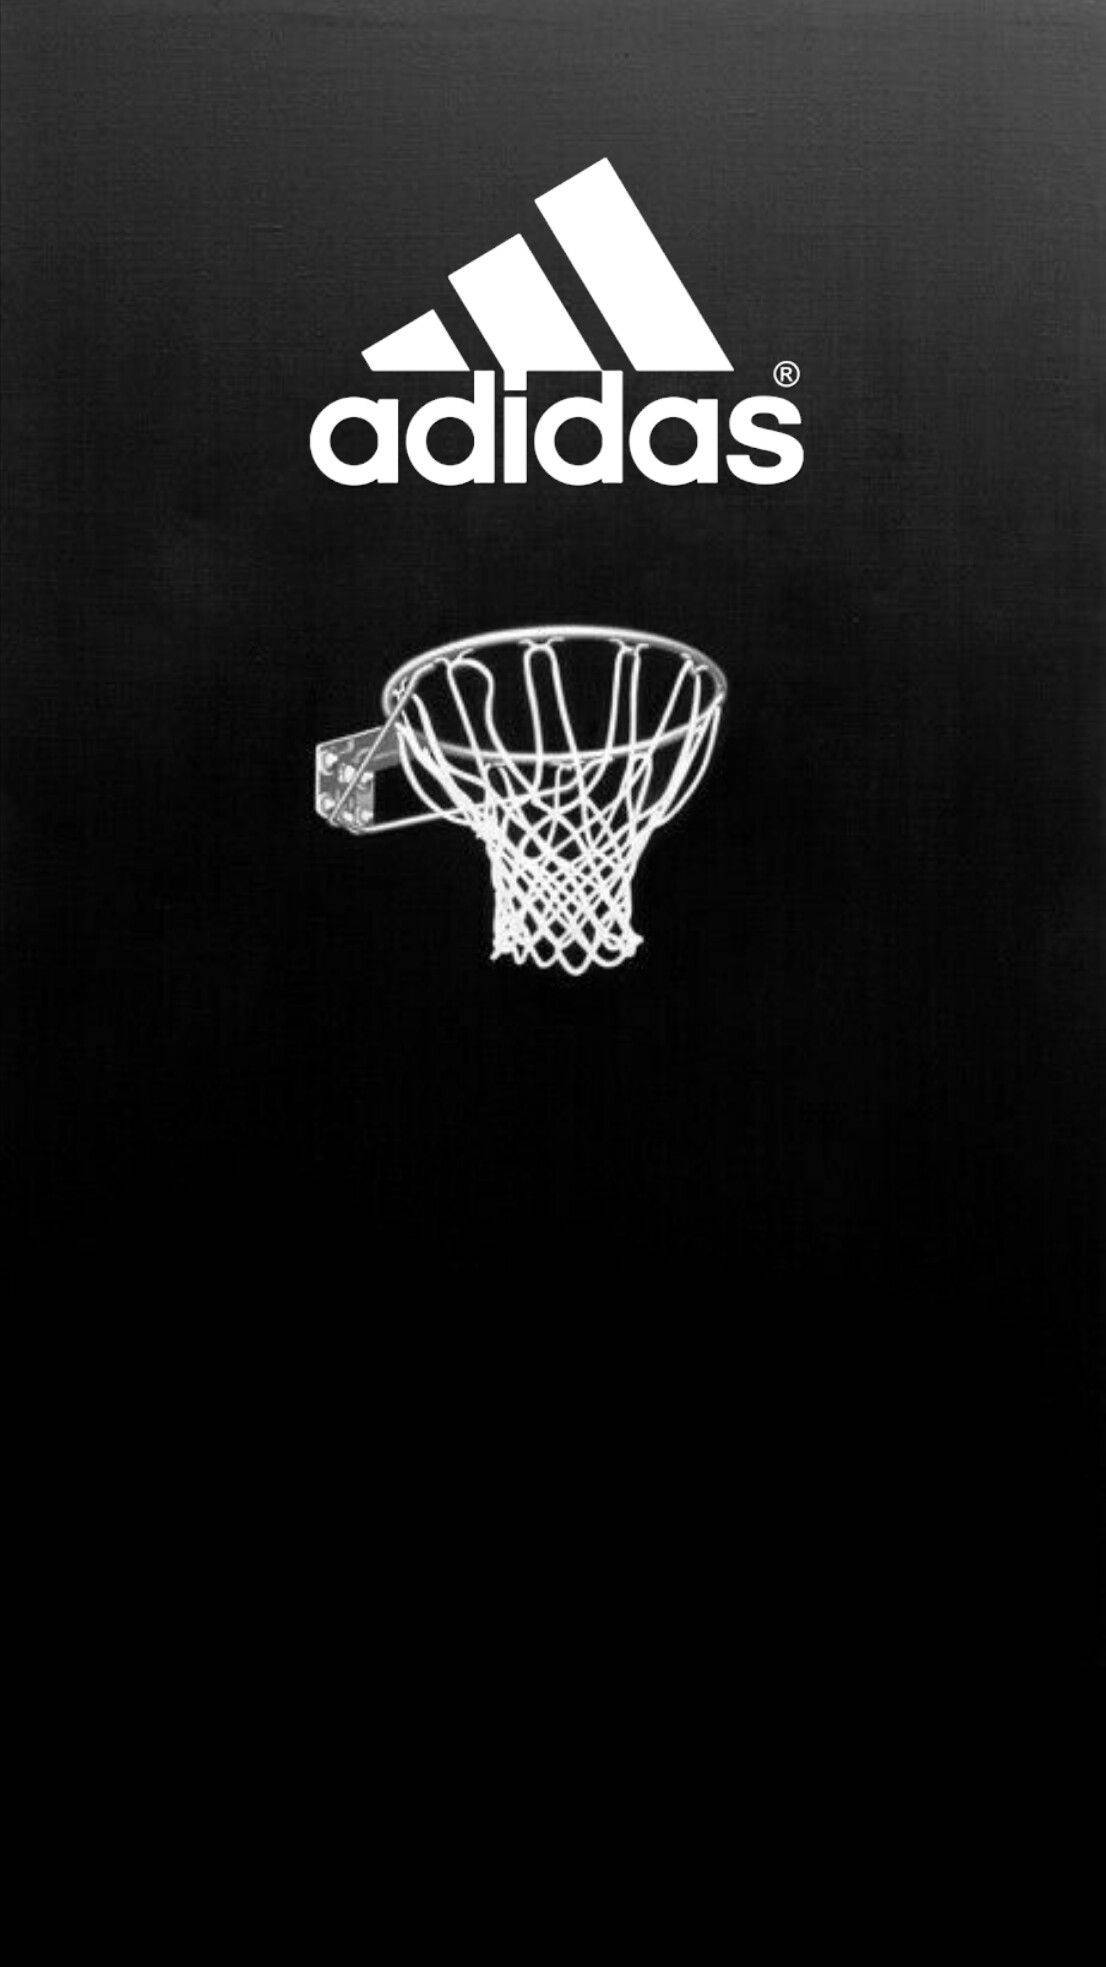 Adidas Basketball Wallpapers